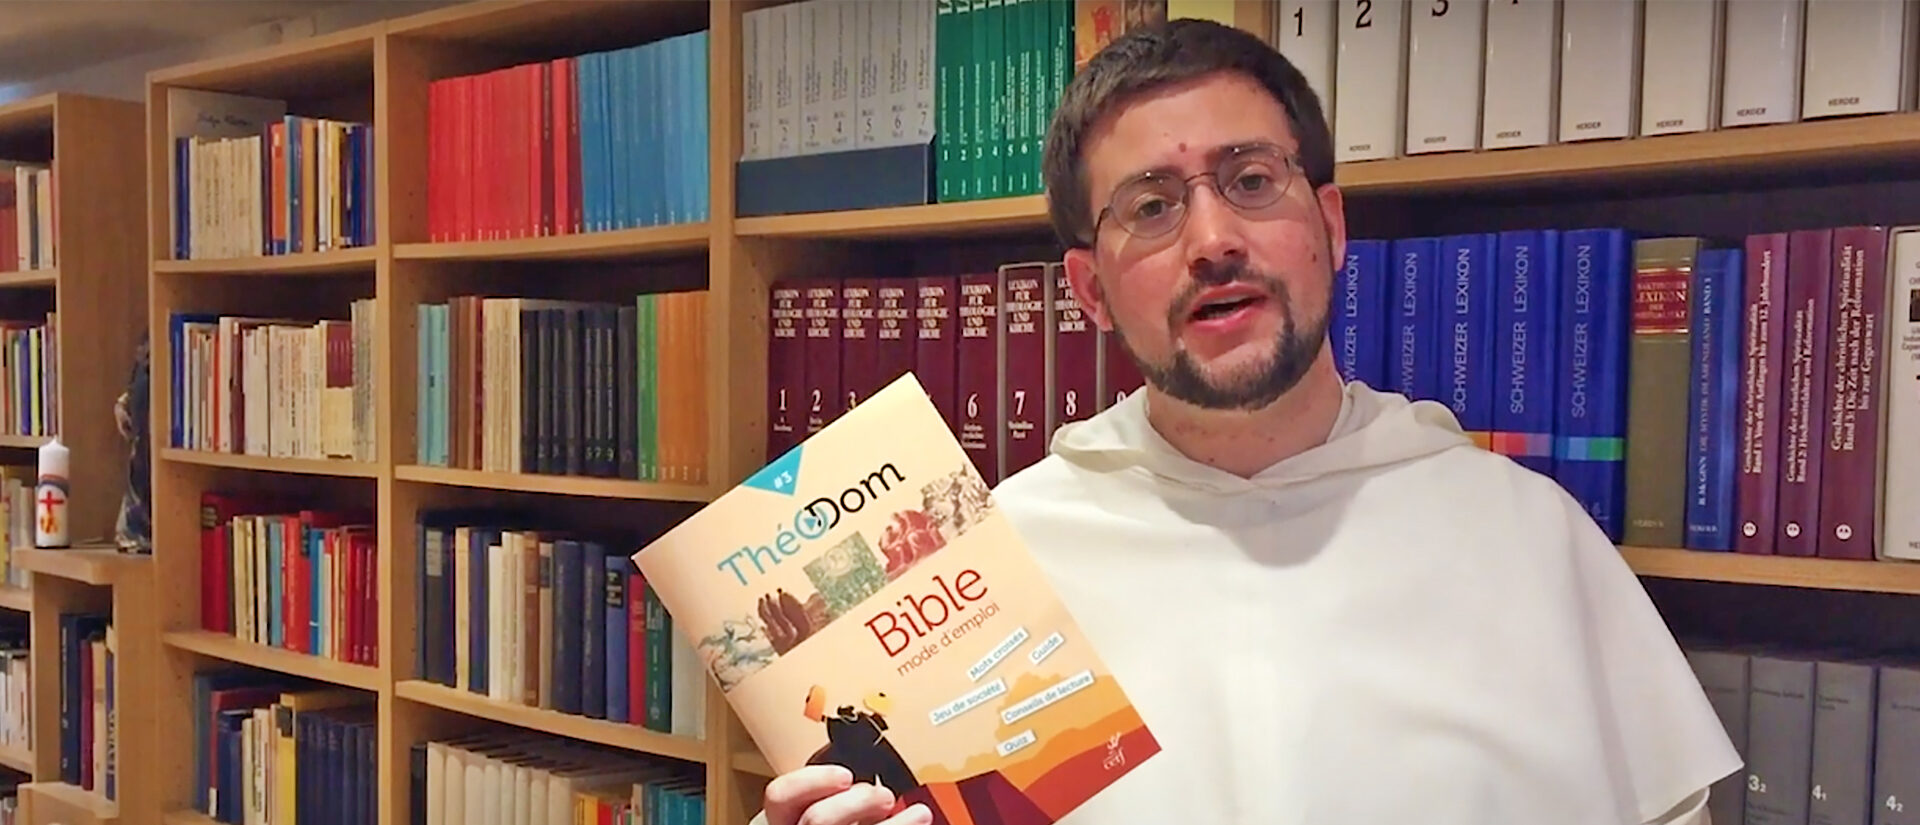 Frère Pierre de Marolles OP présente le dernier ouvrage: Théodom #3 | Youtube